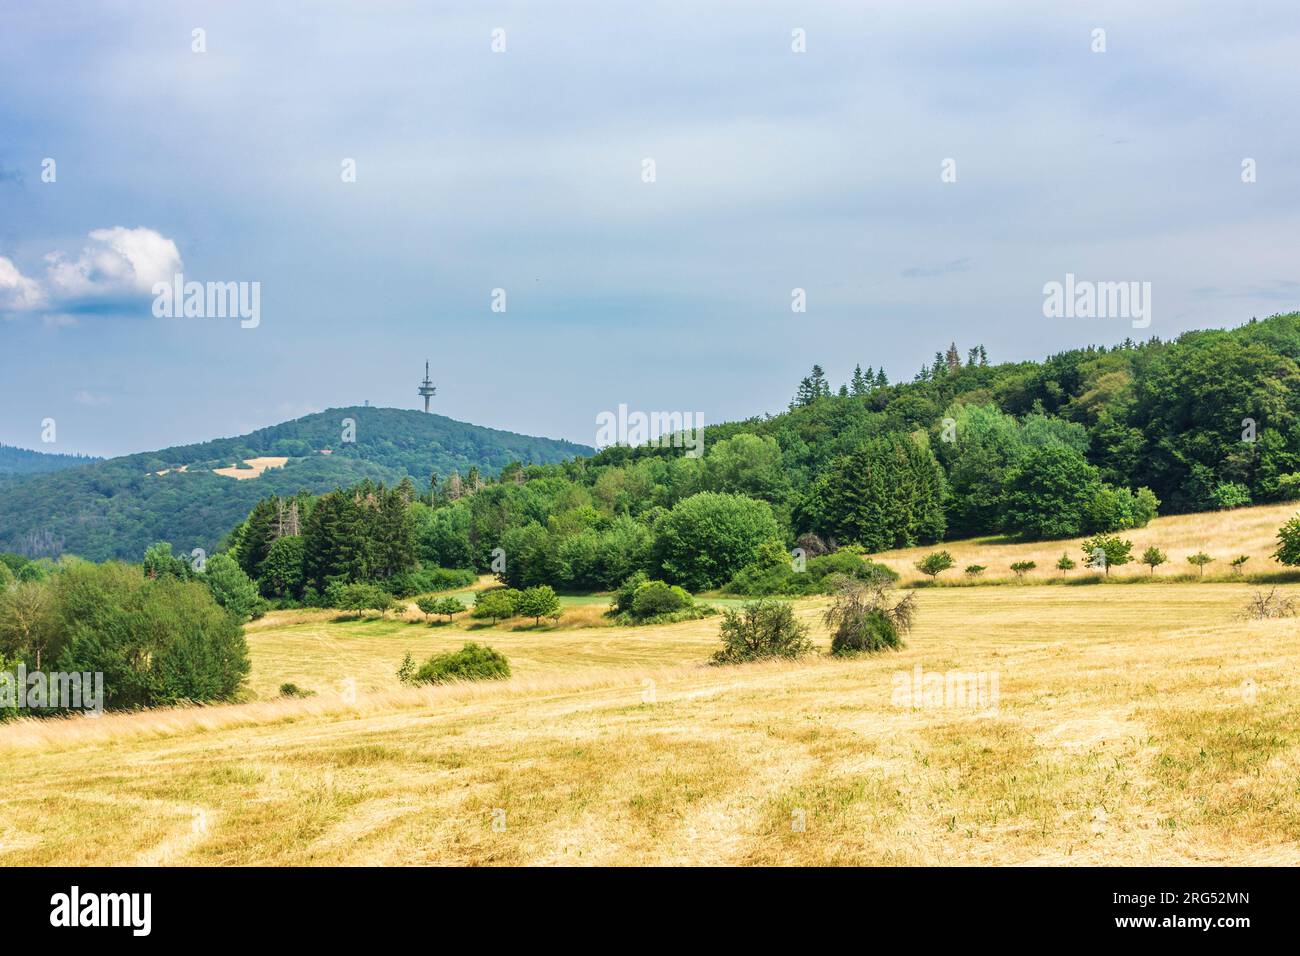 Kelkheim (Taunus): Taunus mountain range, mountain Atzelberg with Typenturm radio tower in Taunus, Hessen, Hesse, Germany Stock Photo